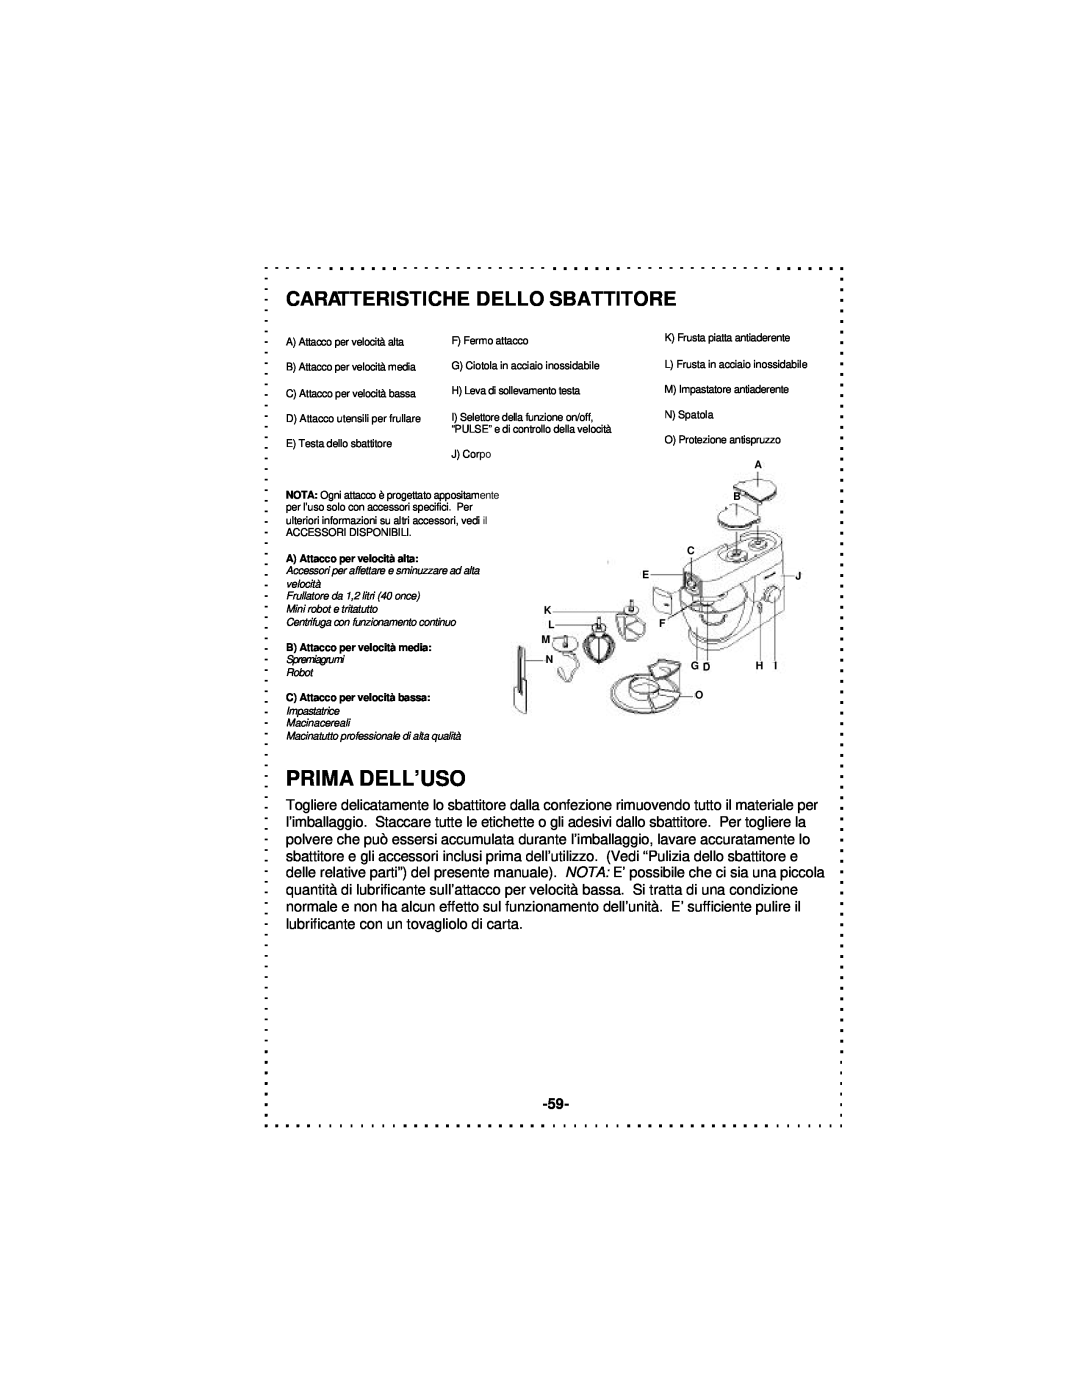 DeLonghi DSM5 - 7 Series instruction manual Prima Dell’Uso, Caratteristiche Dello Sbattitore 